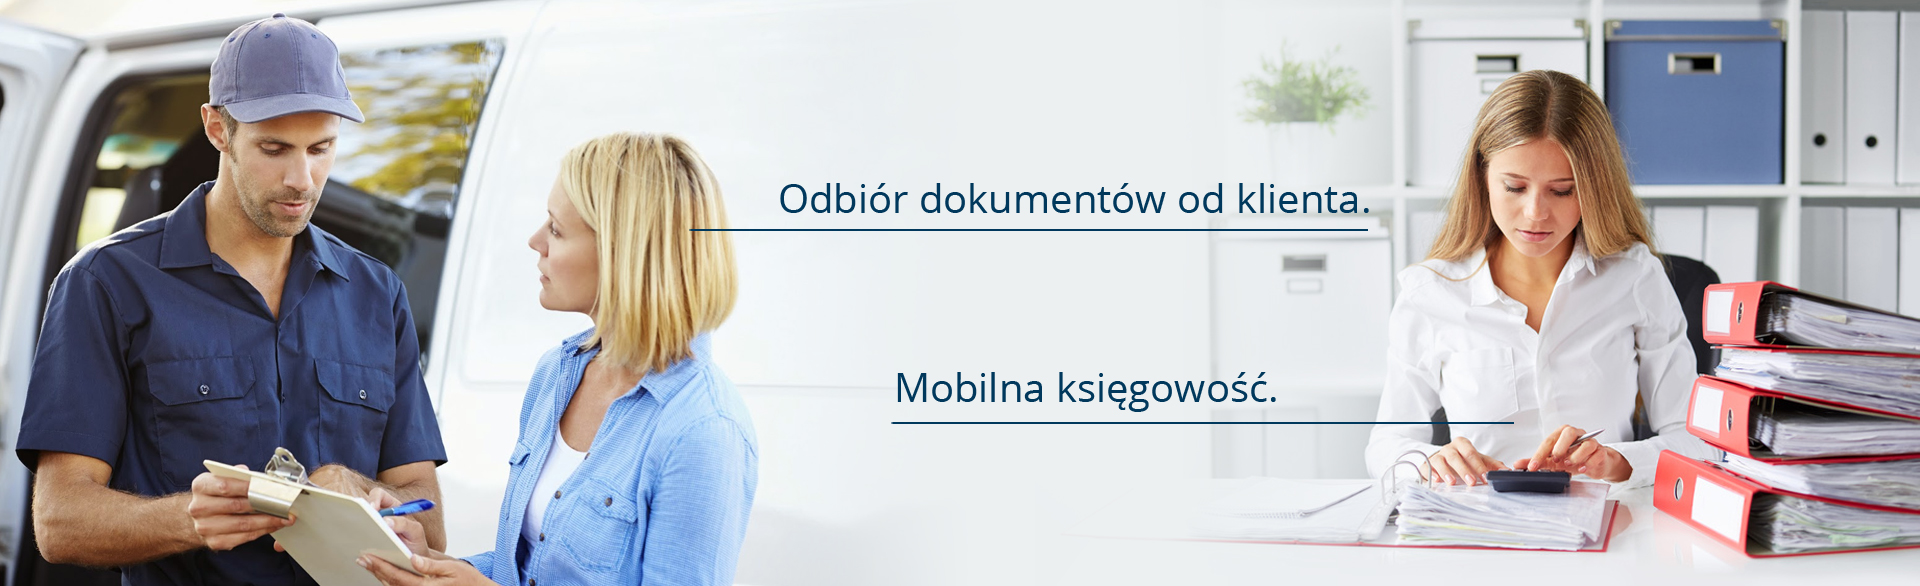 /odior-dokumentow-od-klienta-mobilna-ksiegowosc